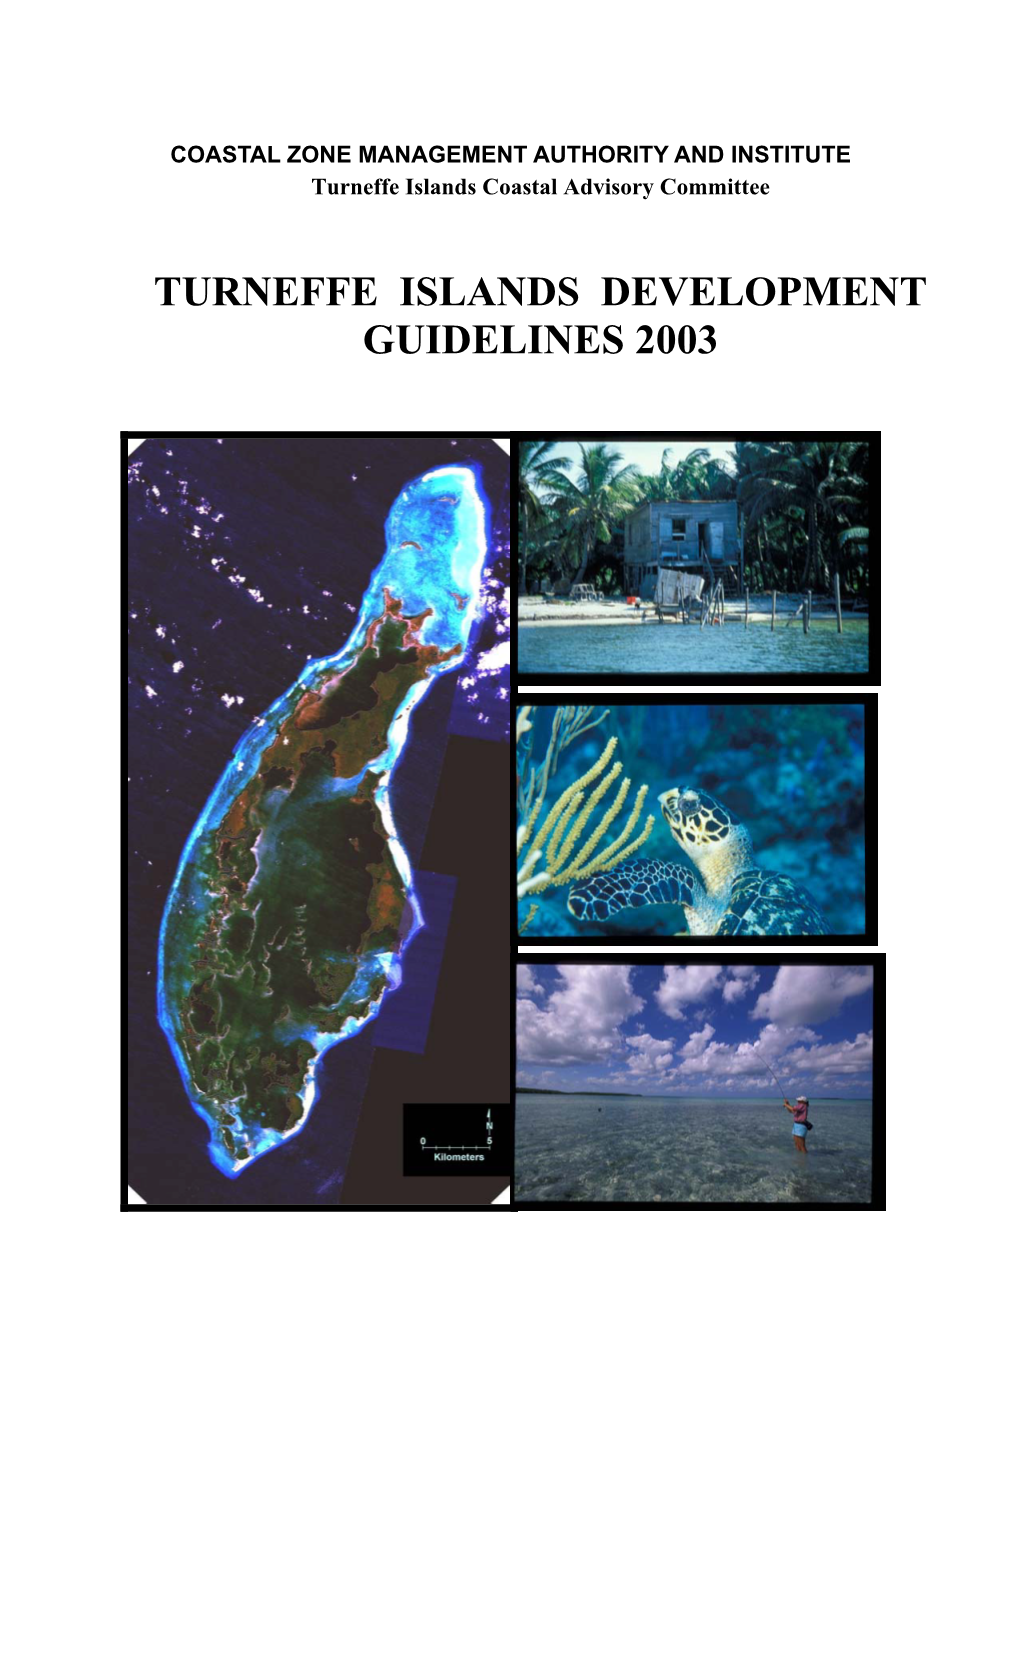 Turneffe Islands Development Guidelines 2003